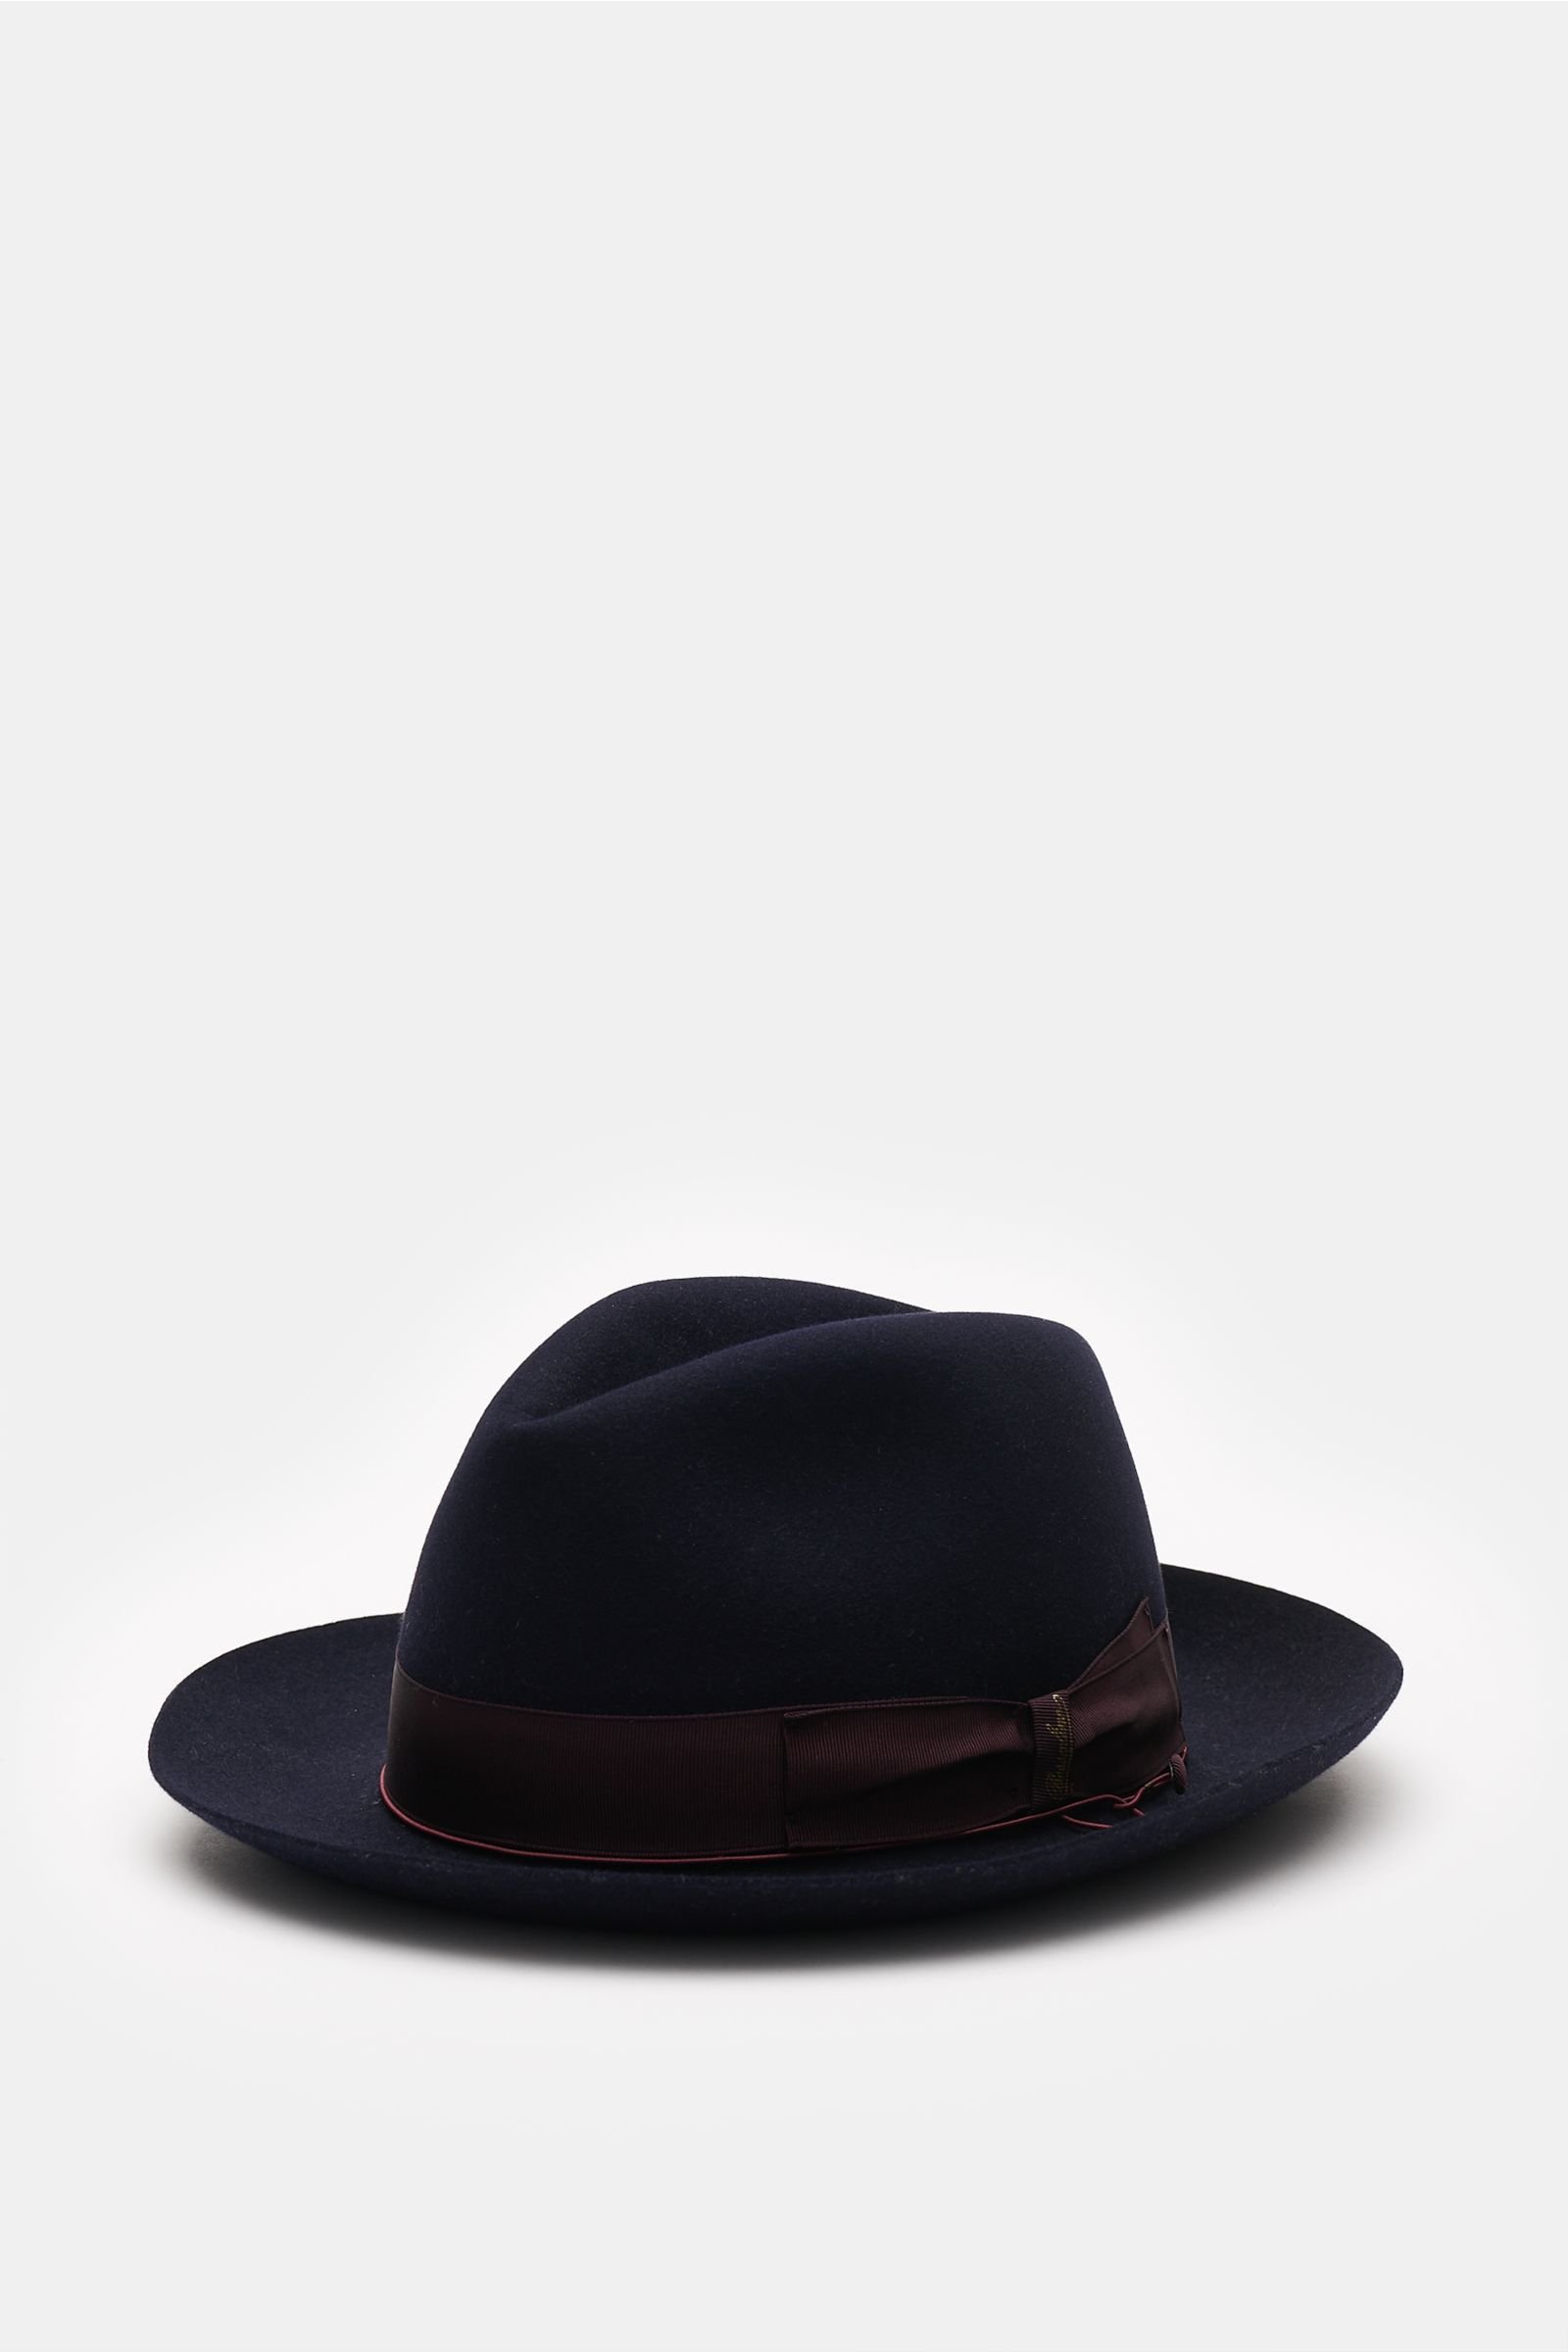 Fedora hat 'Anello' dark navy